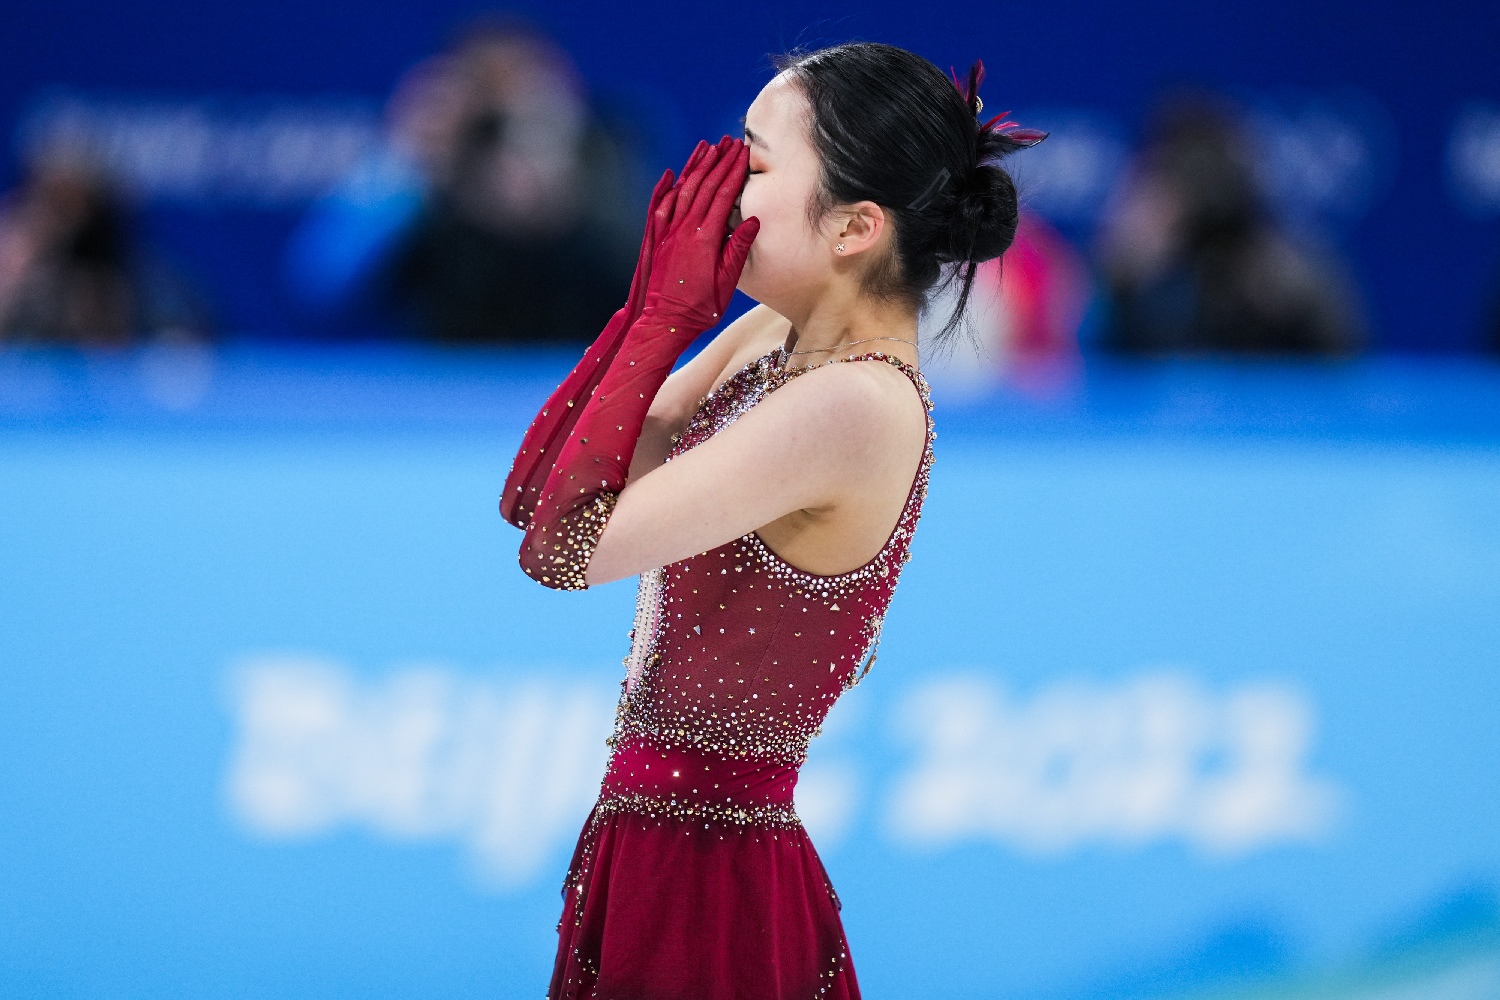 Una niña con un vestido participa en patinaje artístico sobre